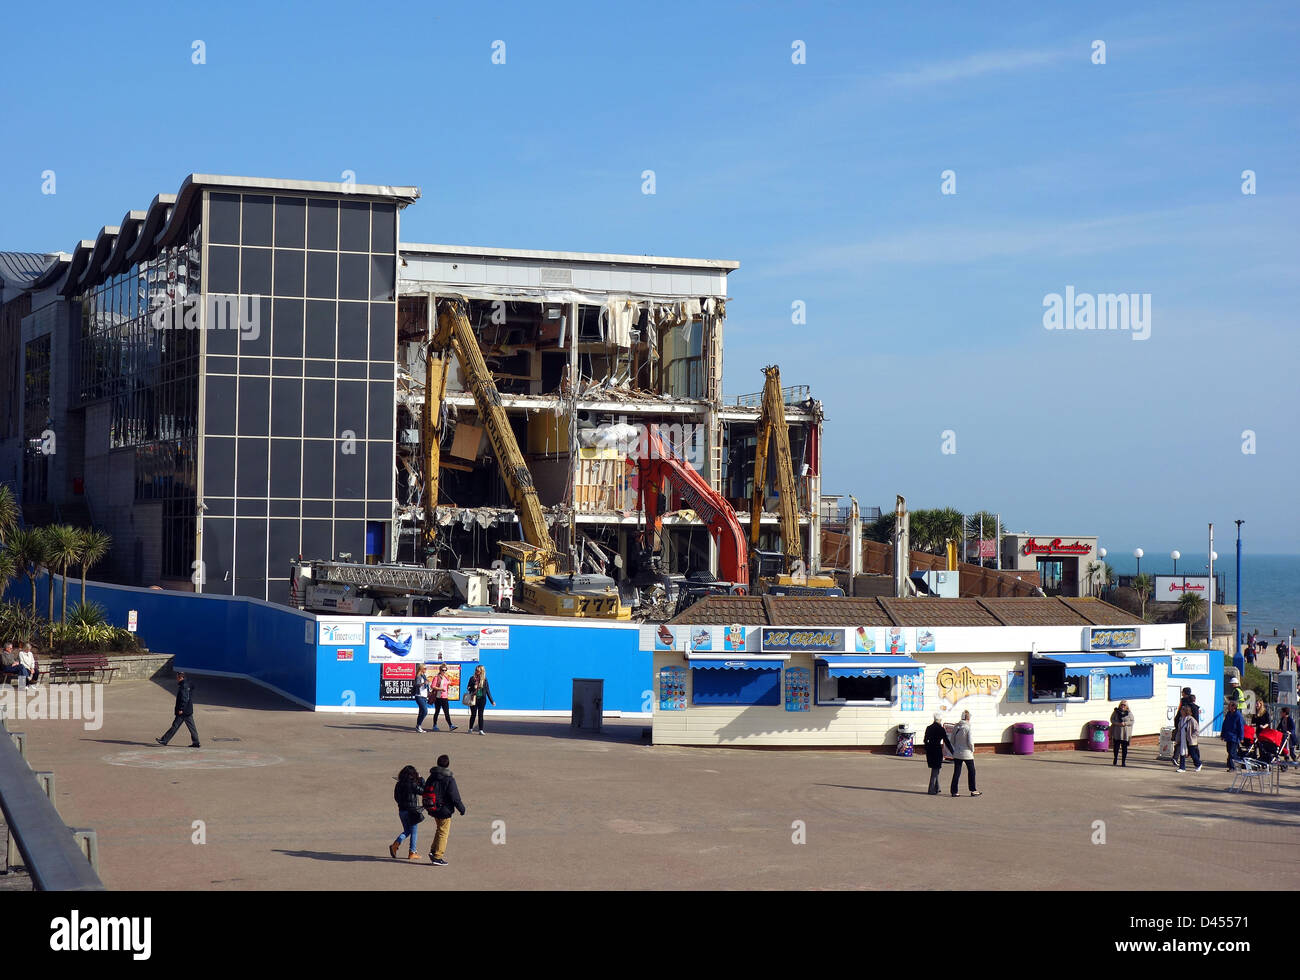 Cinéma Imax au cours de la démolition, Bournemouth, Dorset, Angleterre, Royaume-Uni Banque D'Images